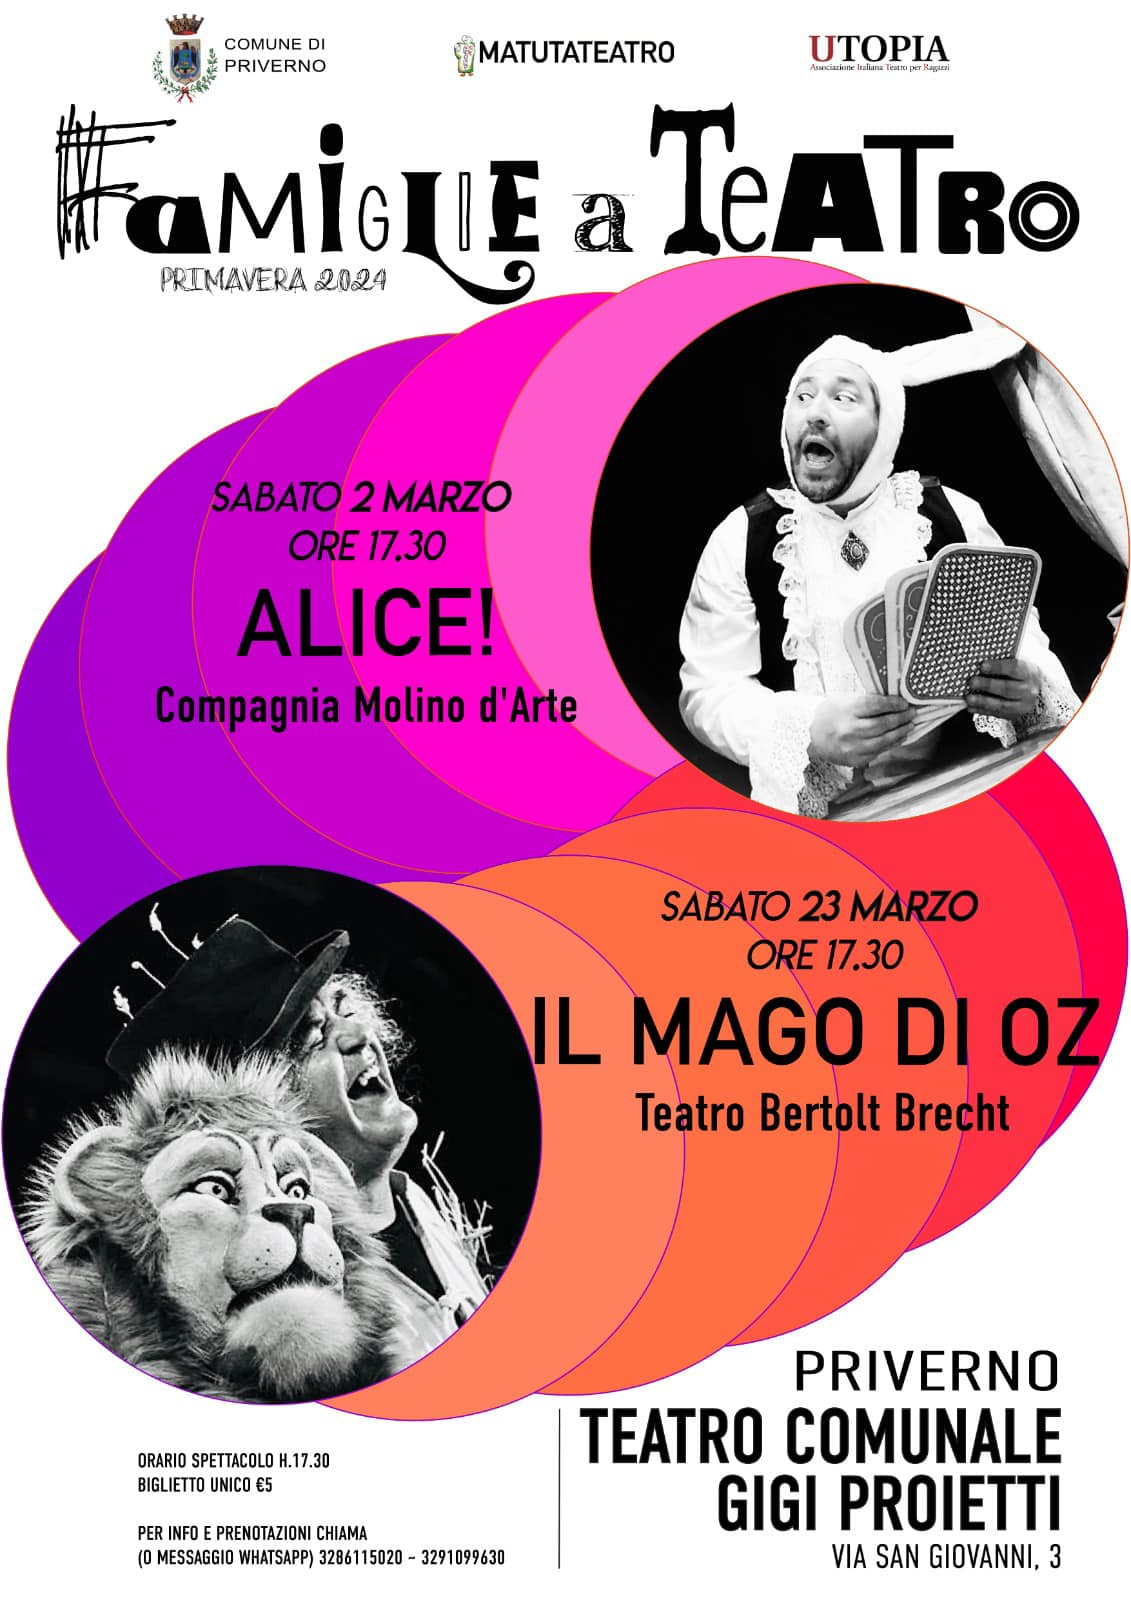 Priverno, Matutateatro: "Famiglie a Teatro!", Primavera 2024 @ Teatro Comunale Gigi Proietti, Priverno (LT)